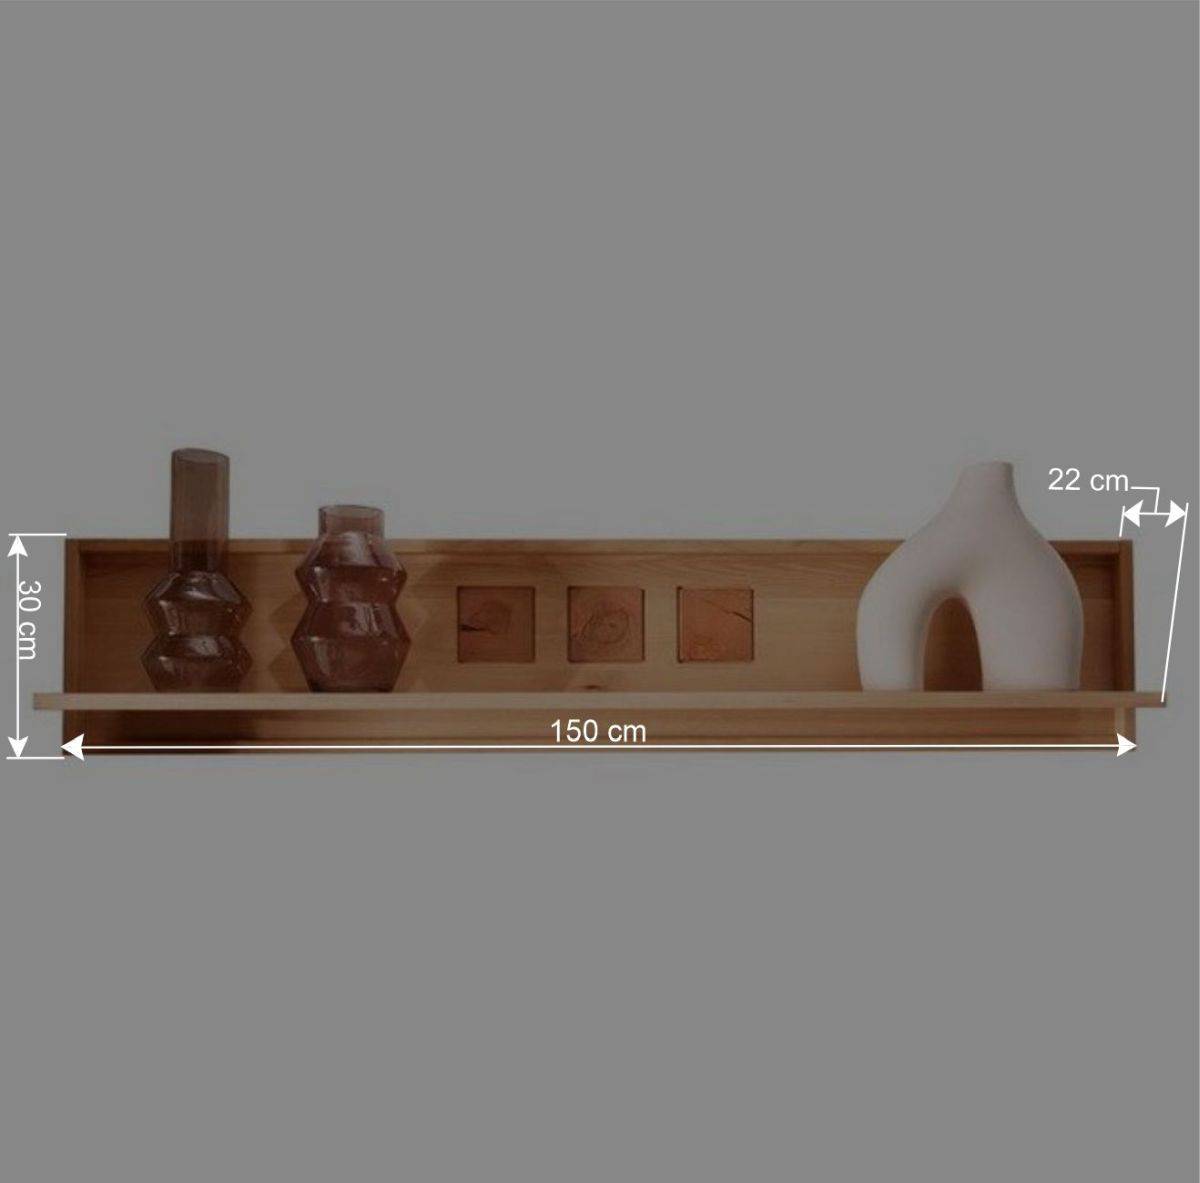 Wohnwand Möbelset aus Massivholz - Sarosca (vierteilig)